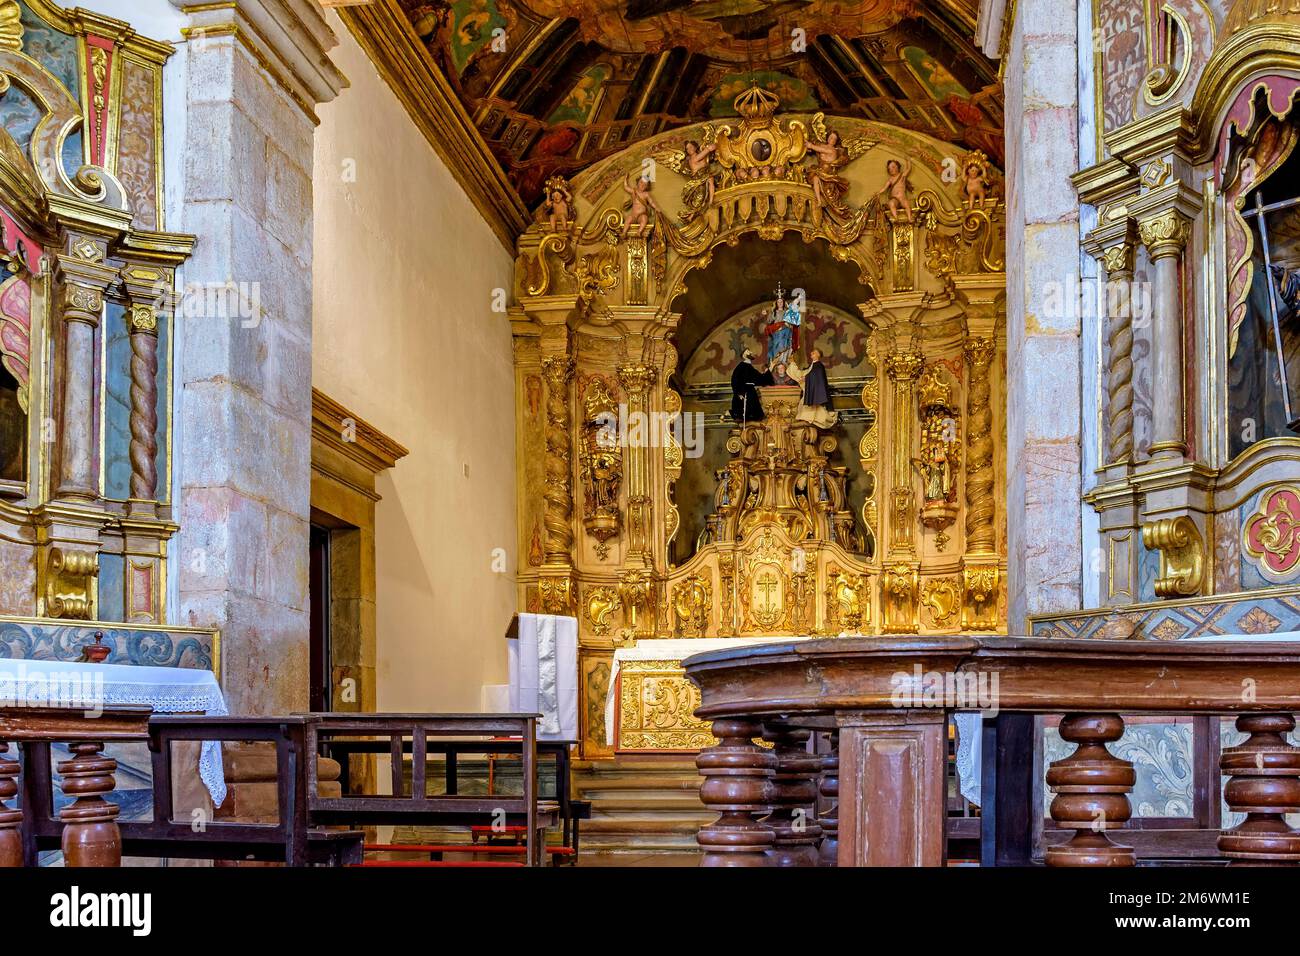 Intérieur et autel d'une ancienne église baroque aux murs aux feuilles d'or Banque D'Images